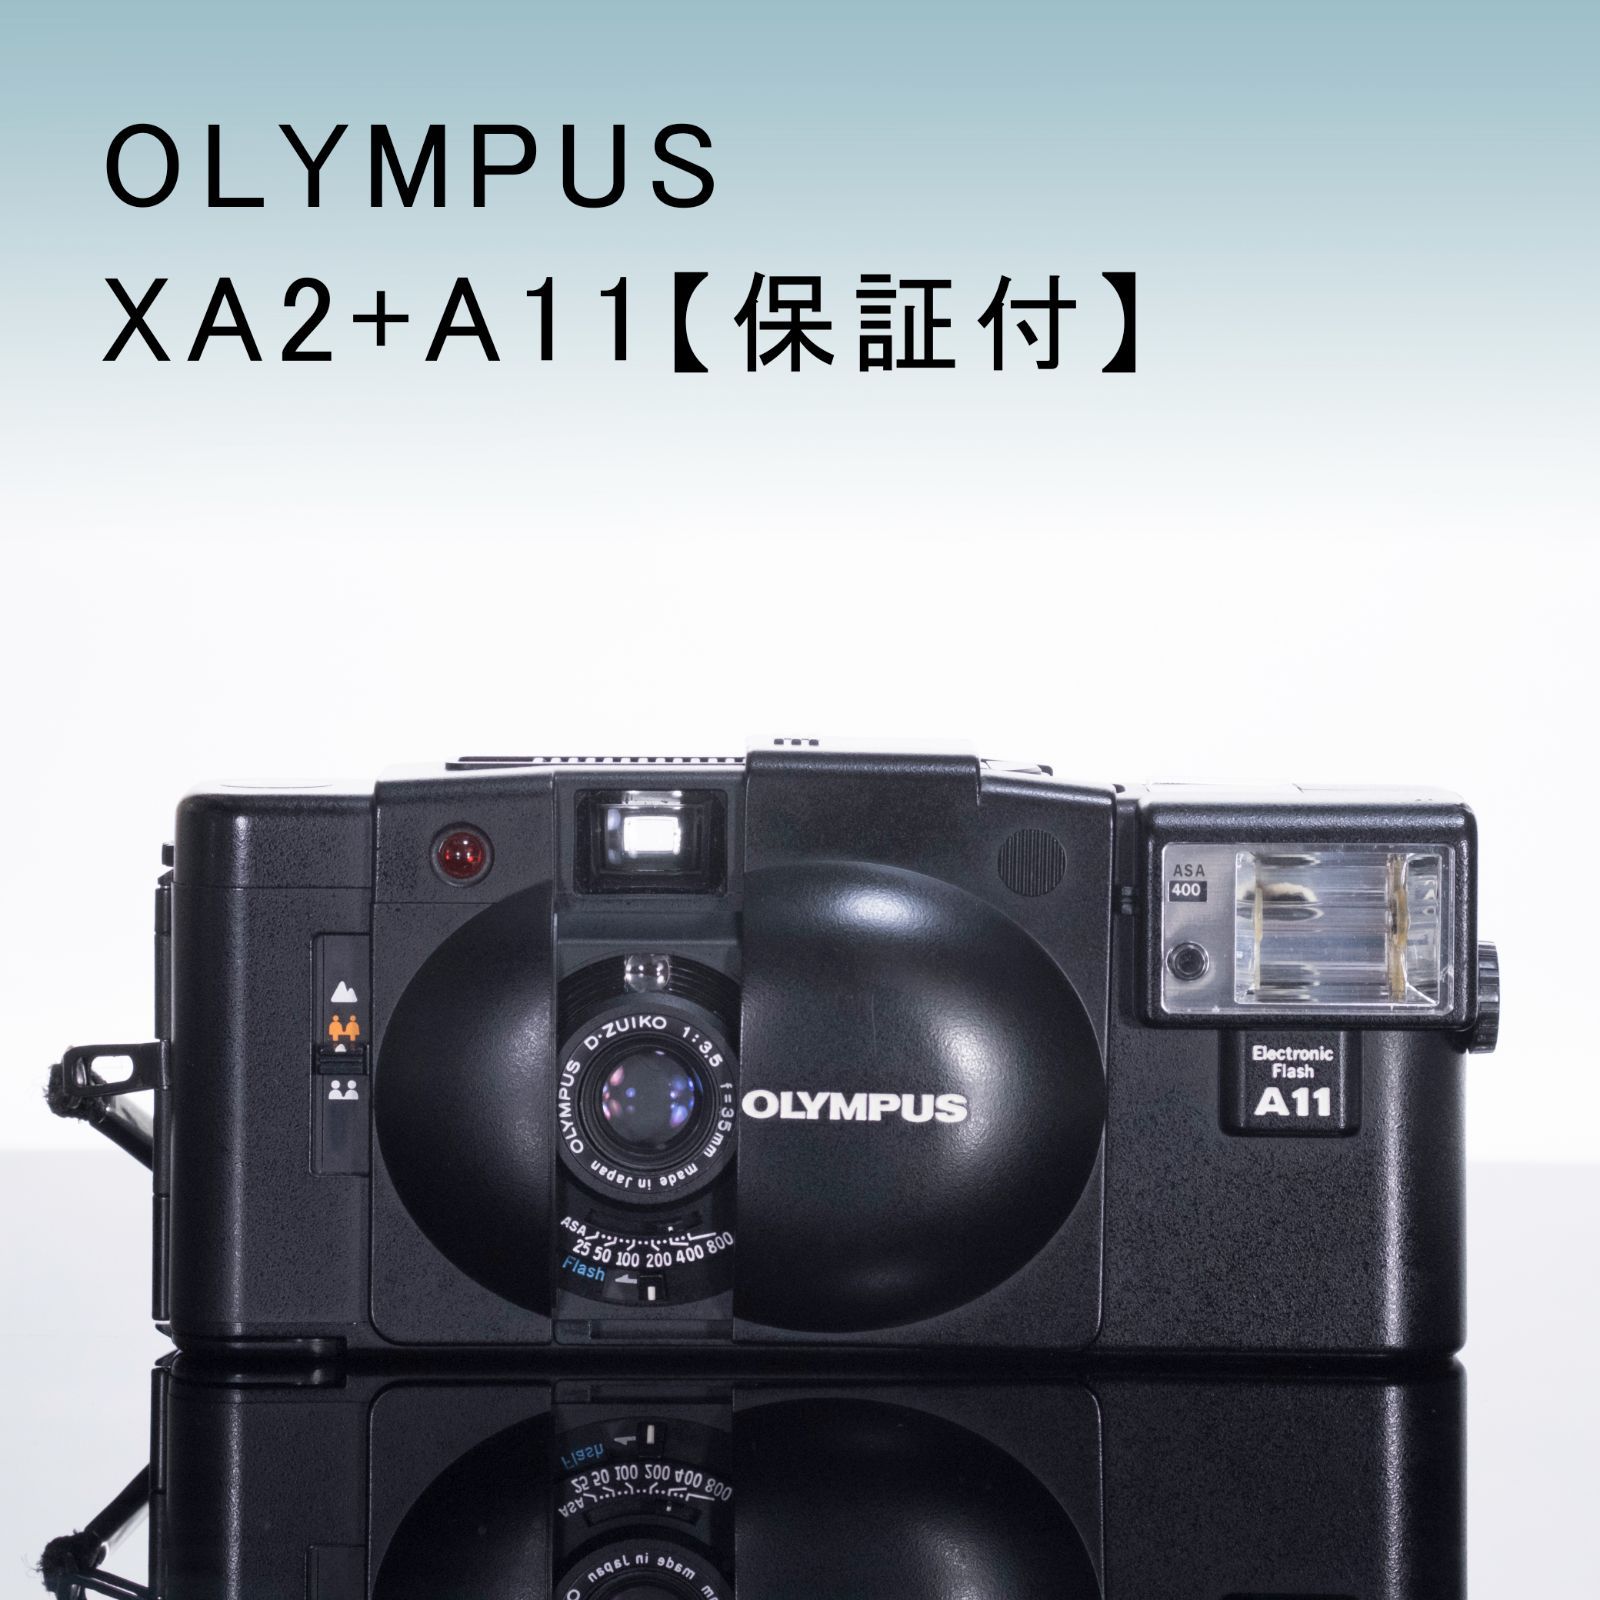 OLYMPUS XA2 + A11【ランクA オリンパス】 - メルカリ